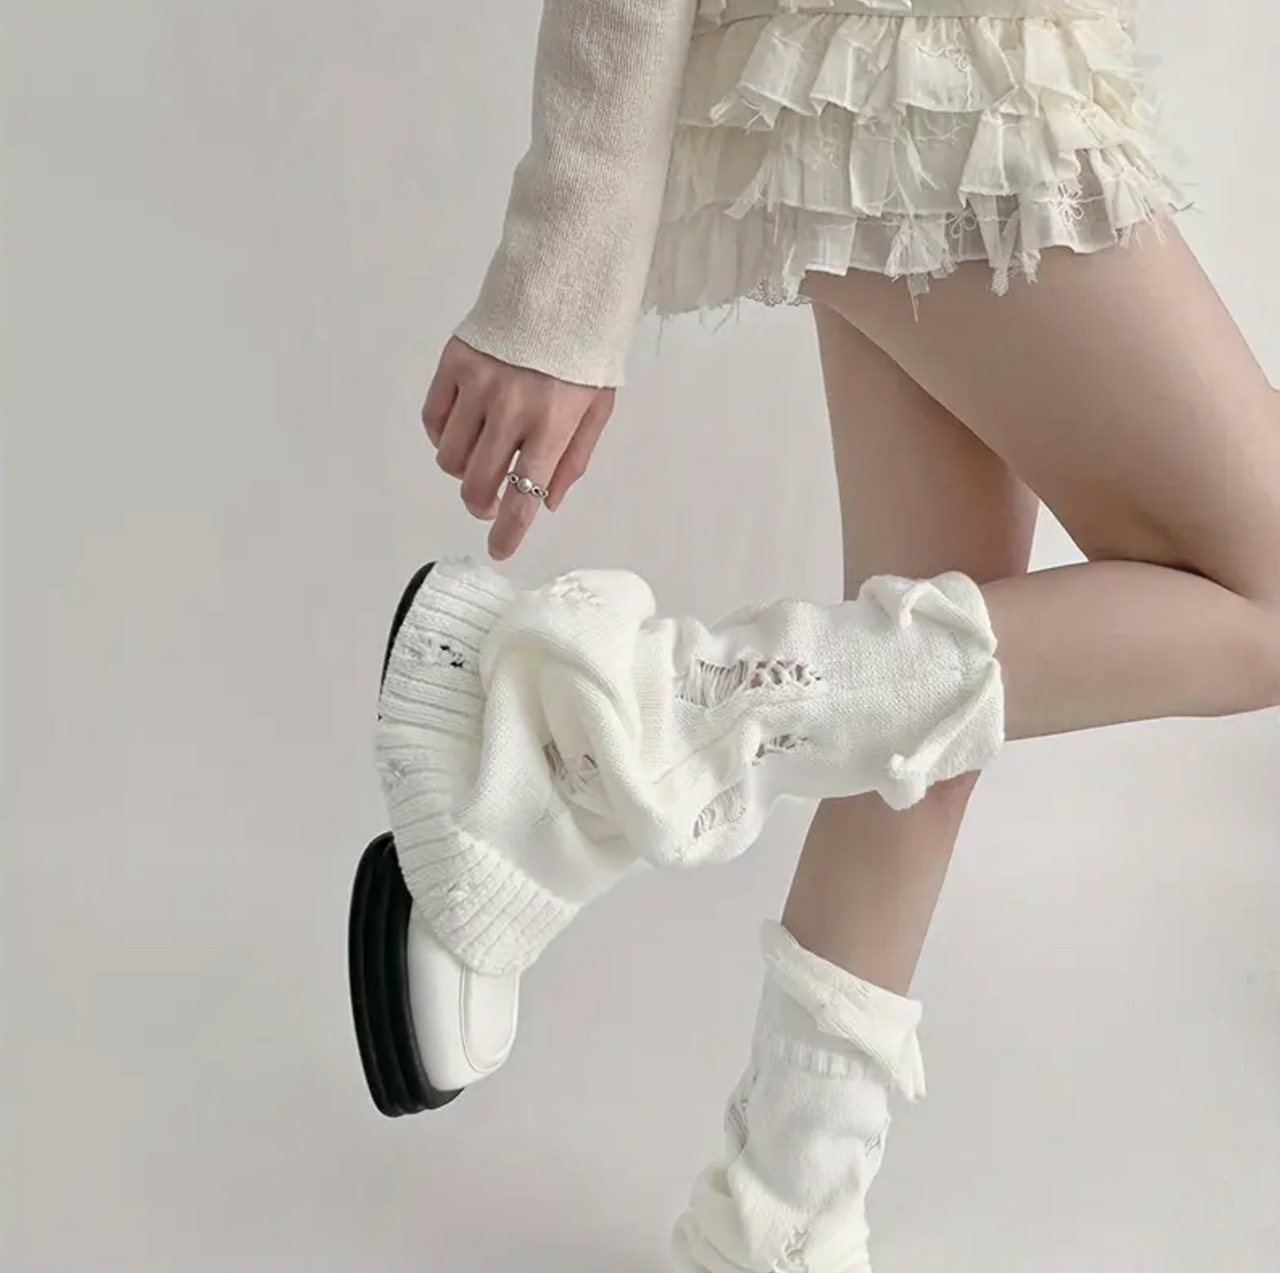 🌲 Early Christmas Sale - SAVE OFF 60% 🎁 Lolita Charm Leg Warmer Socks